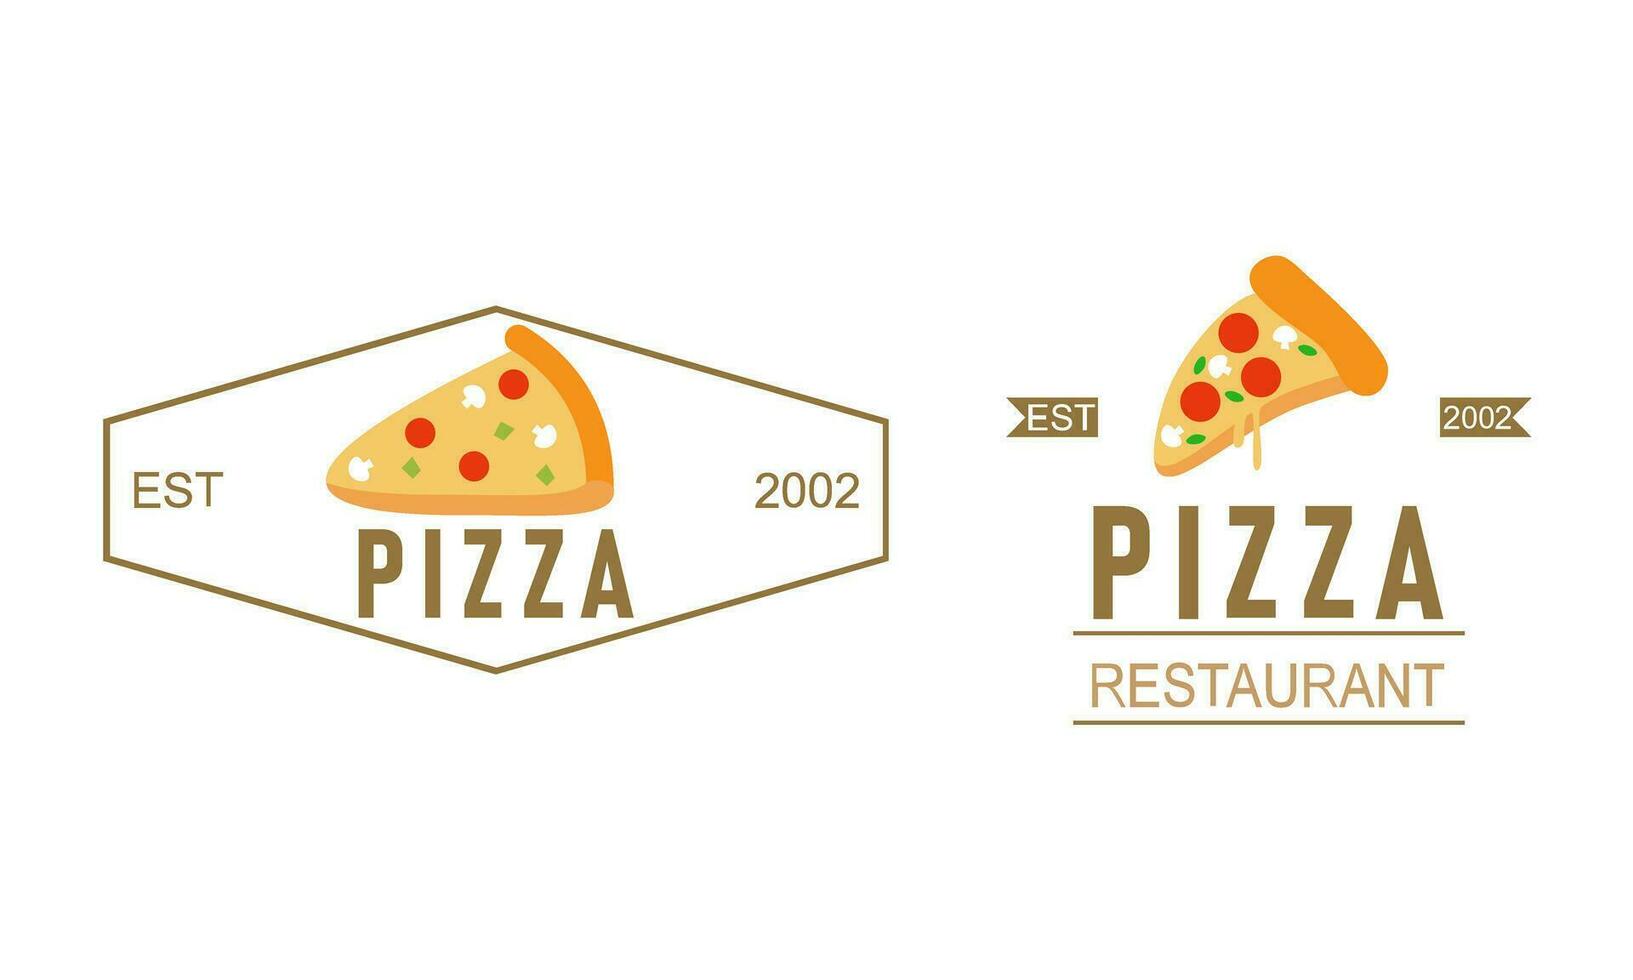 Pizza logo, íconos y diseño elementos para pizzería vector